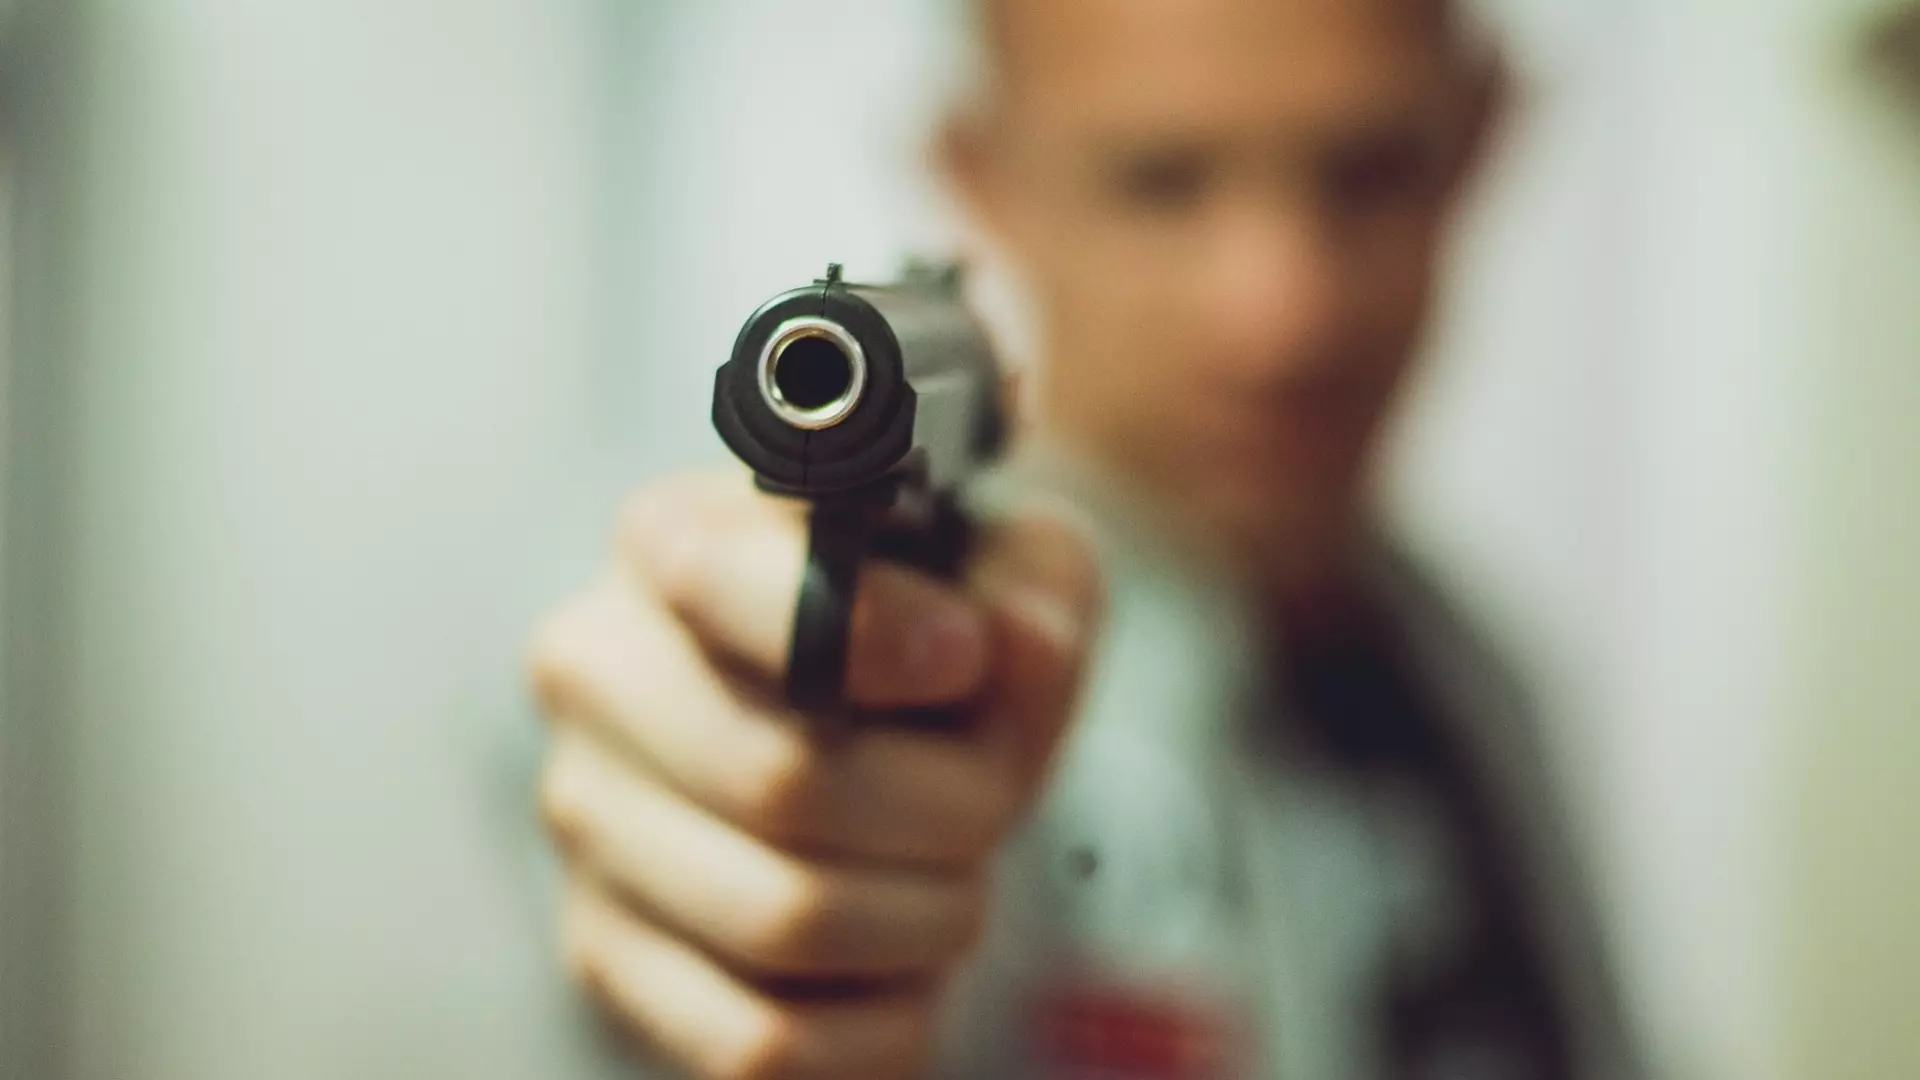 Житель Екатеринбурга наставил пистолет на курьера и требовал раздеться